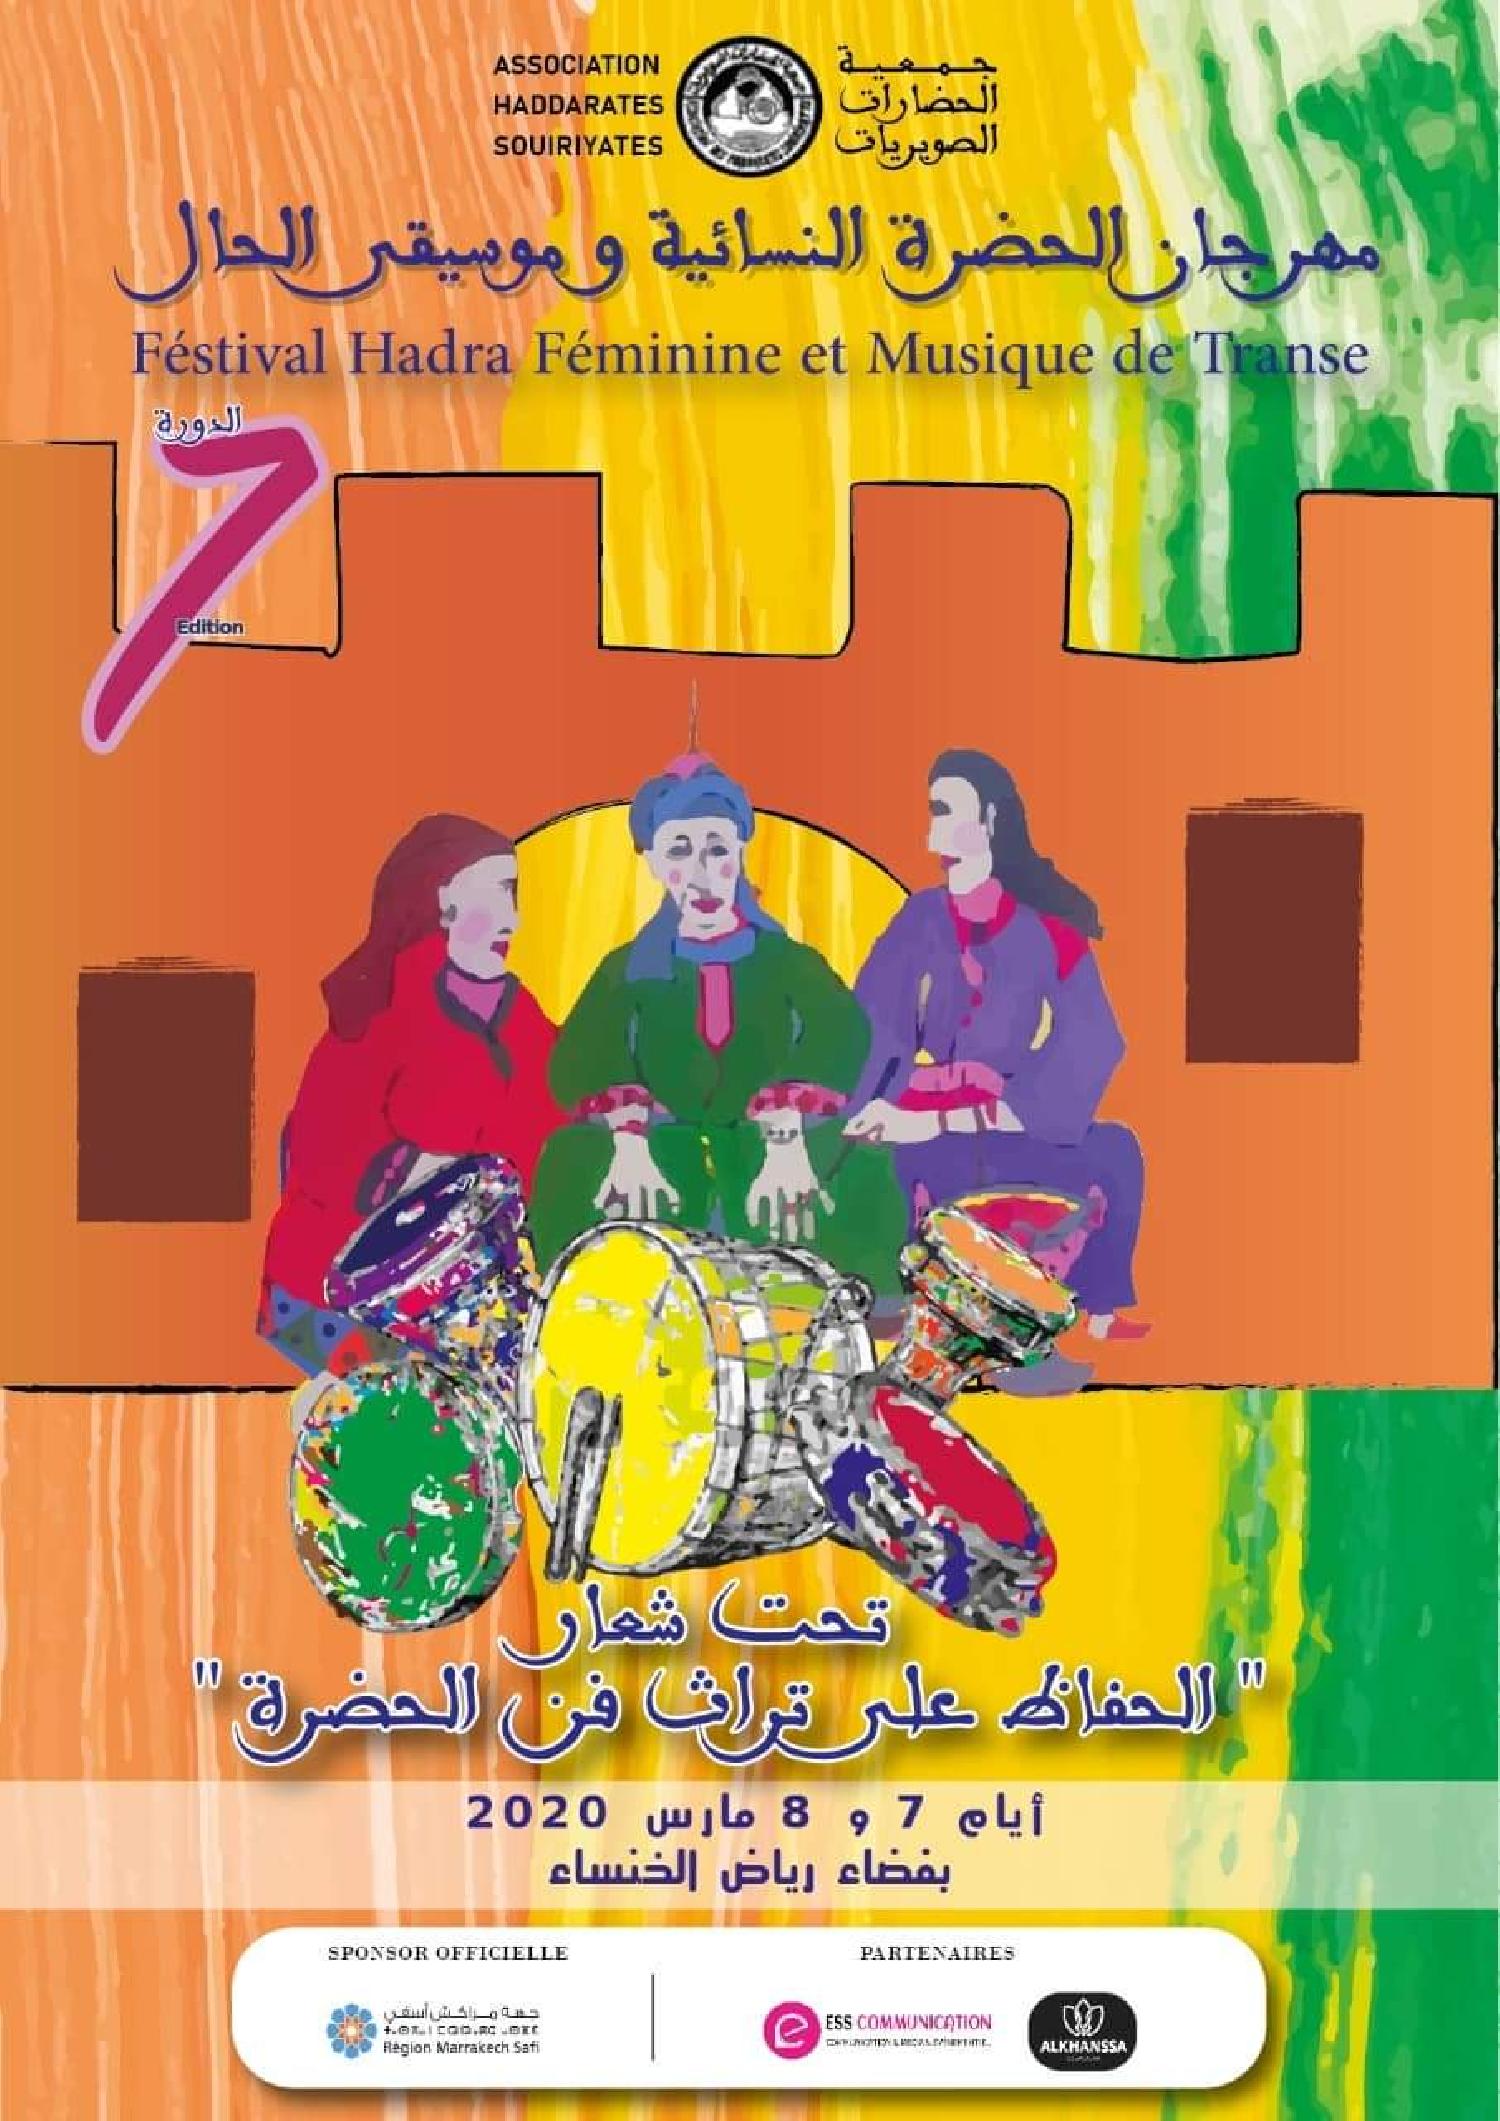 بمناسبة اليوم العالمي للمرأة الصويرة تحتفي بمهرجان الحضرة النسائية  وموسيقى الحال في دورته السابعة